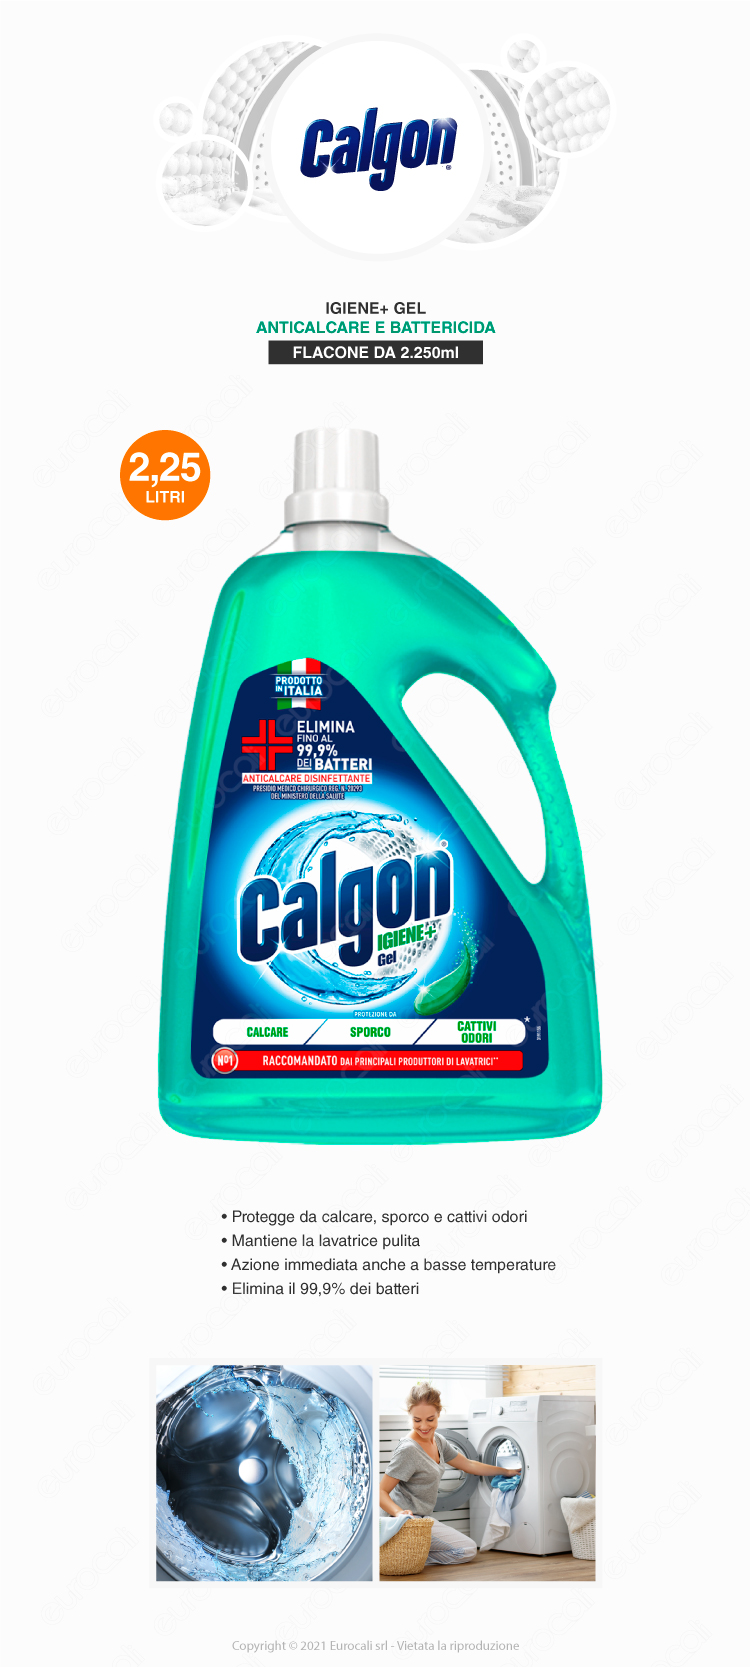 Calgon Igiene+ Gel trattamento anticalcare lavatrice preisidio medico chirurgico 2250ml